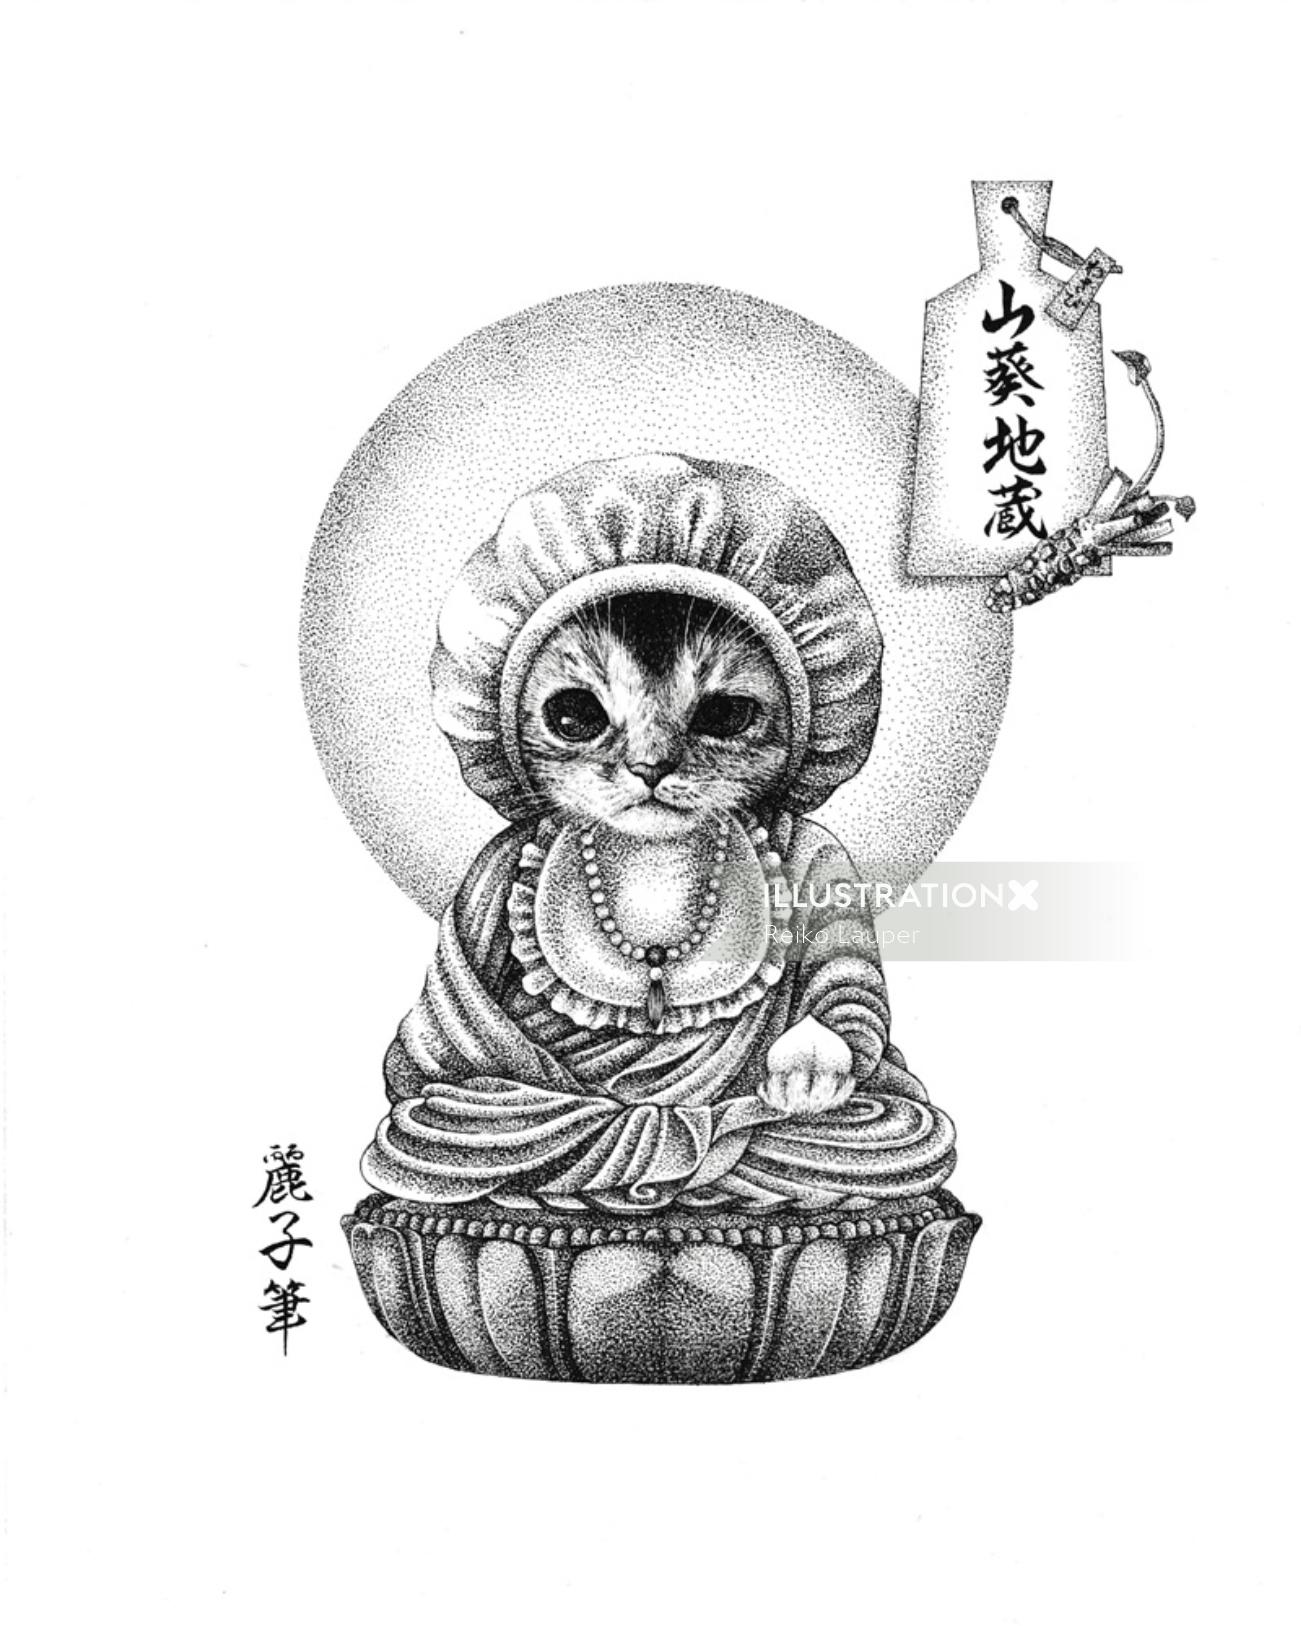 Cat Buddha